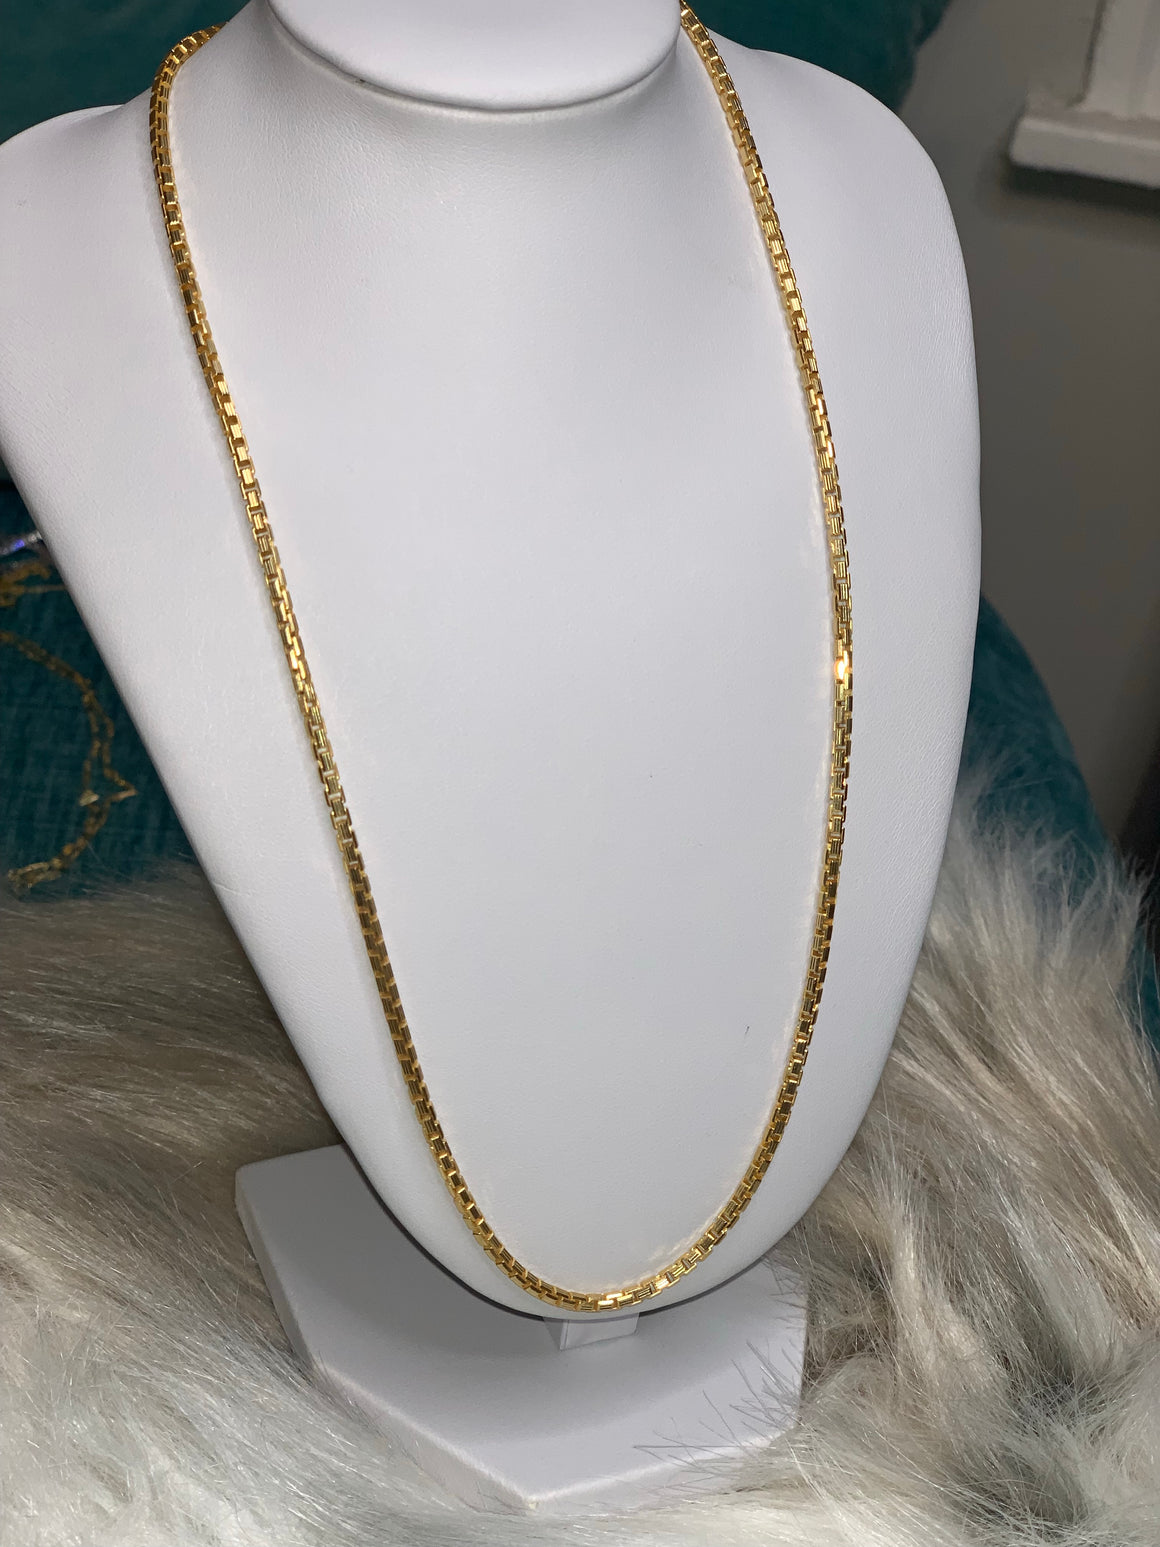 Venetian necklace